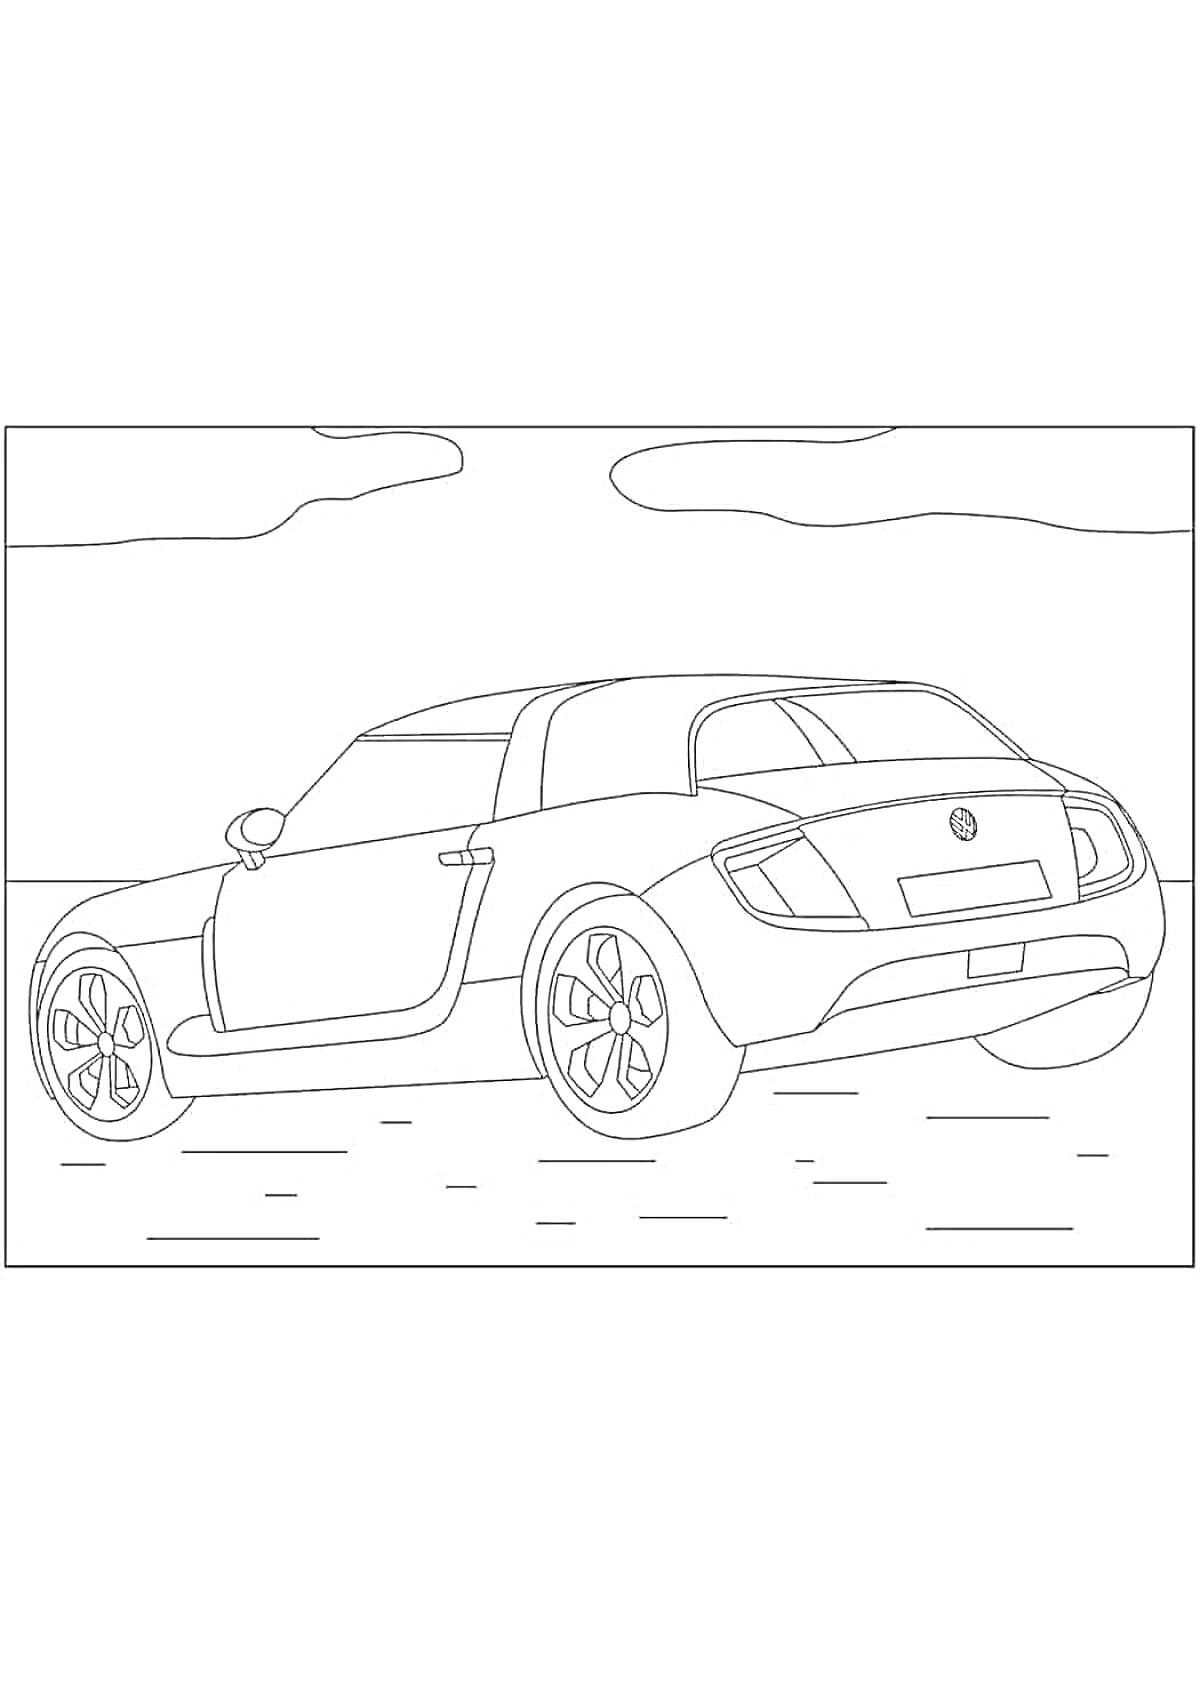 Раскраска Рисунок автомобиля Volkswagen с дорогой и облаками